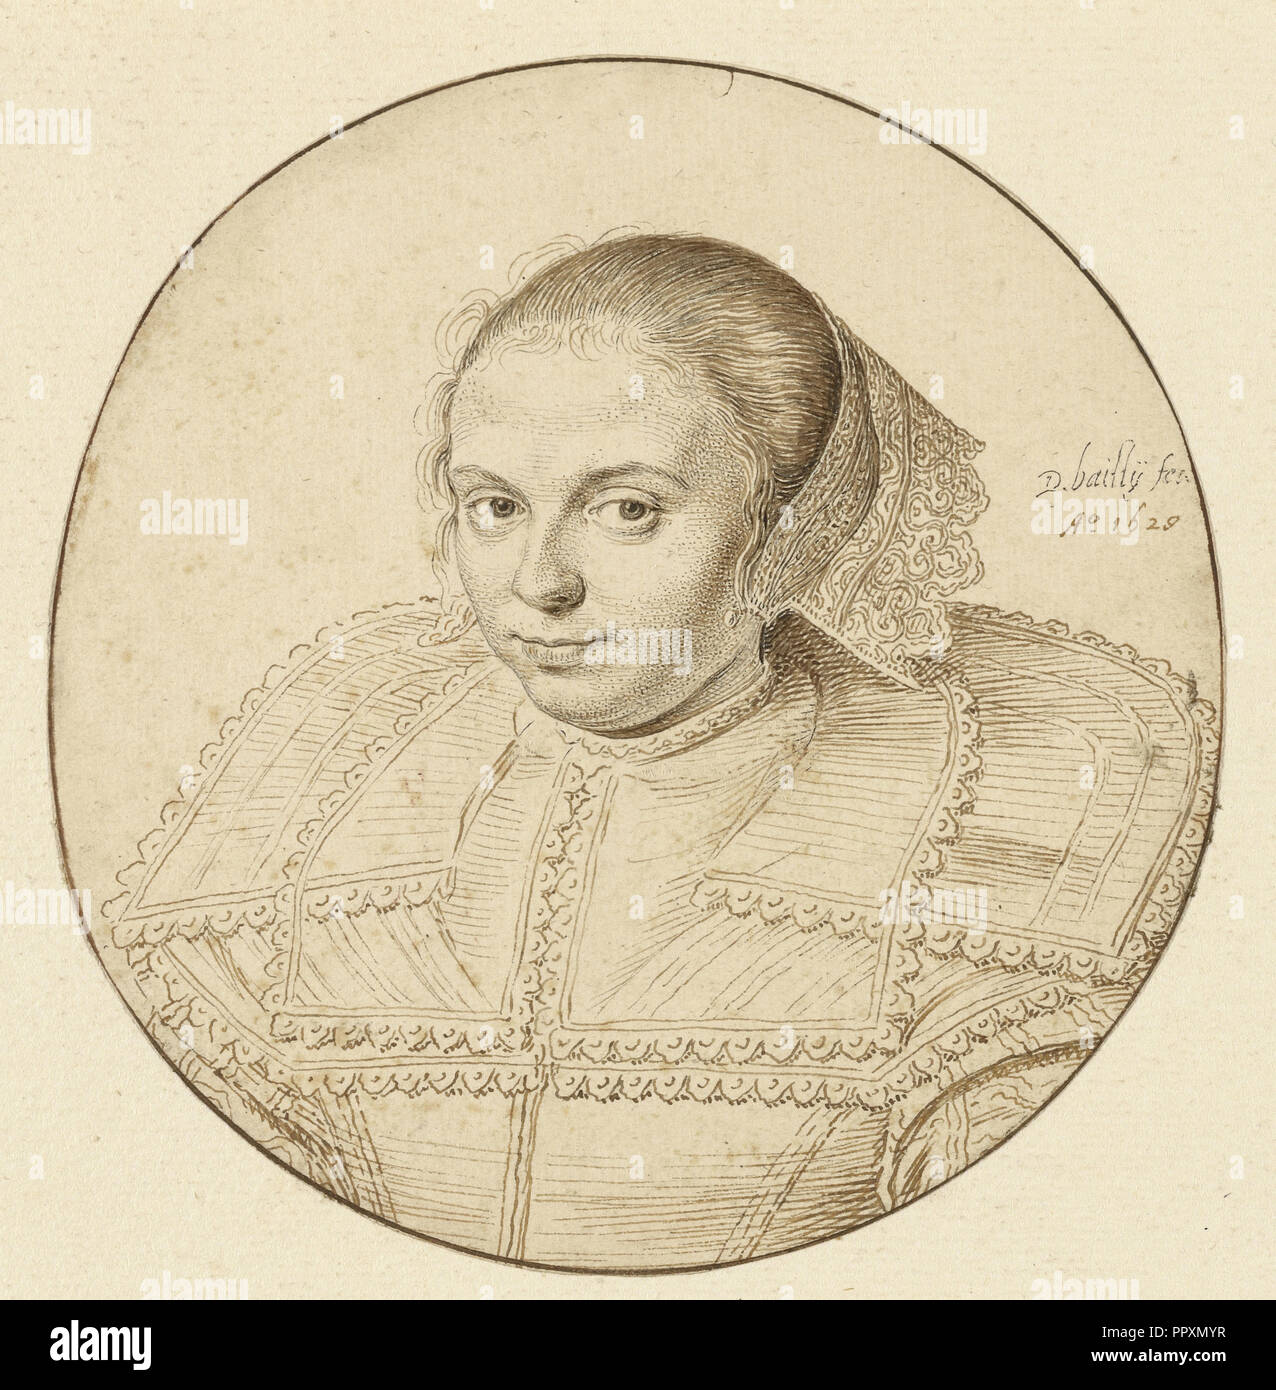 Portrait d'une femme ; David Bailly, Néerlandais, 1584 - 1657, Pays-Bas ; 1629 ; plume et encre brune clair et foncé ; ossature en ligne Banque D'Images